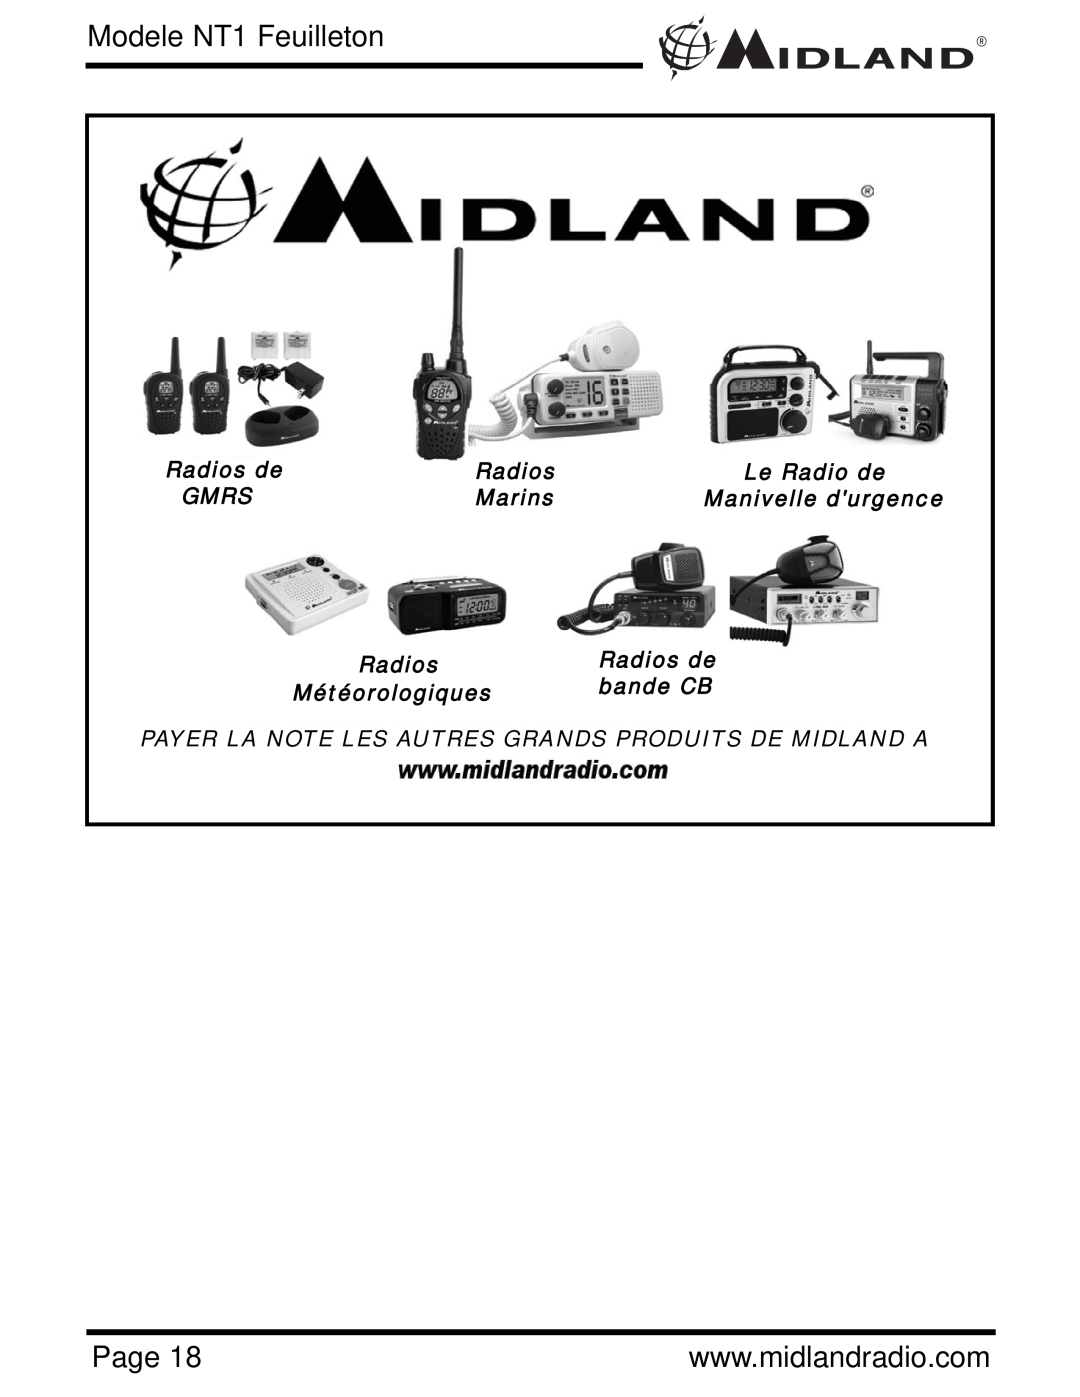 Midland Radio NT1VP, NT1 SERIES owner manual Modele NT1 Feuilleton, Page 